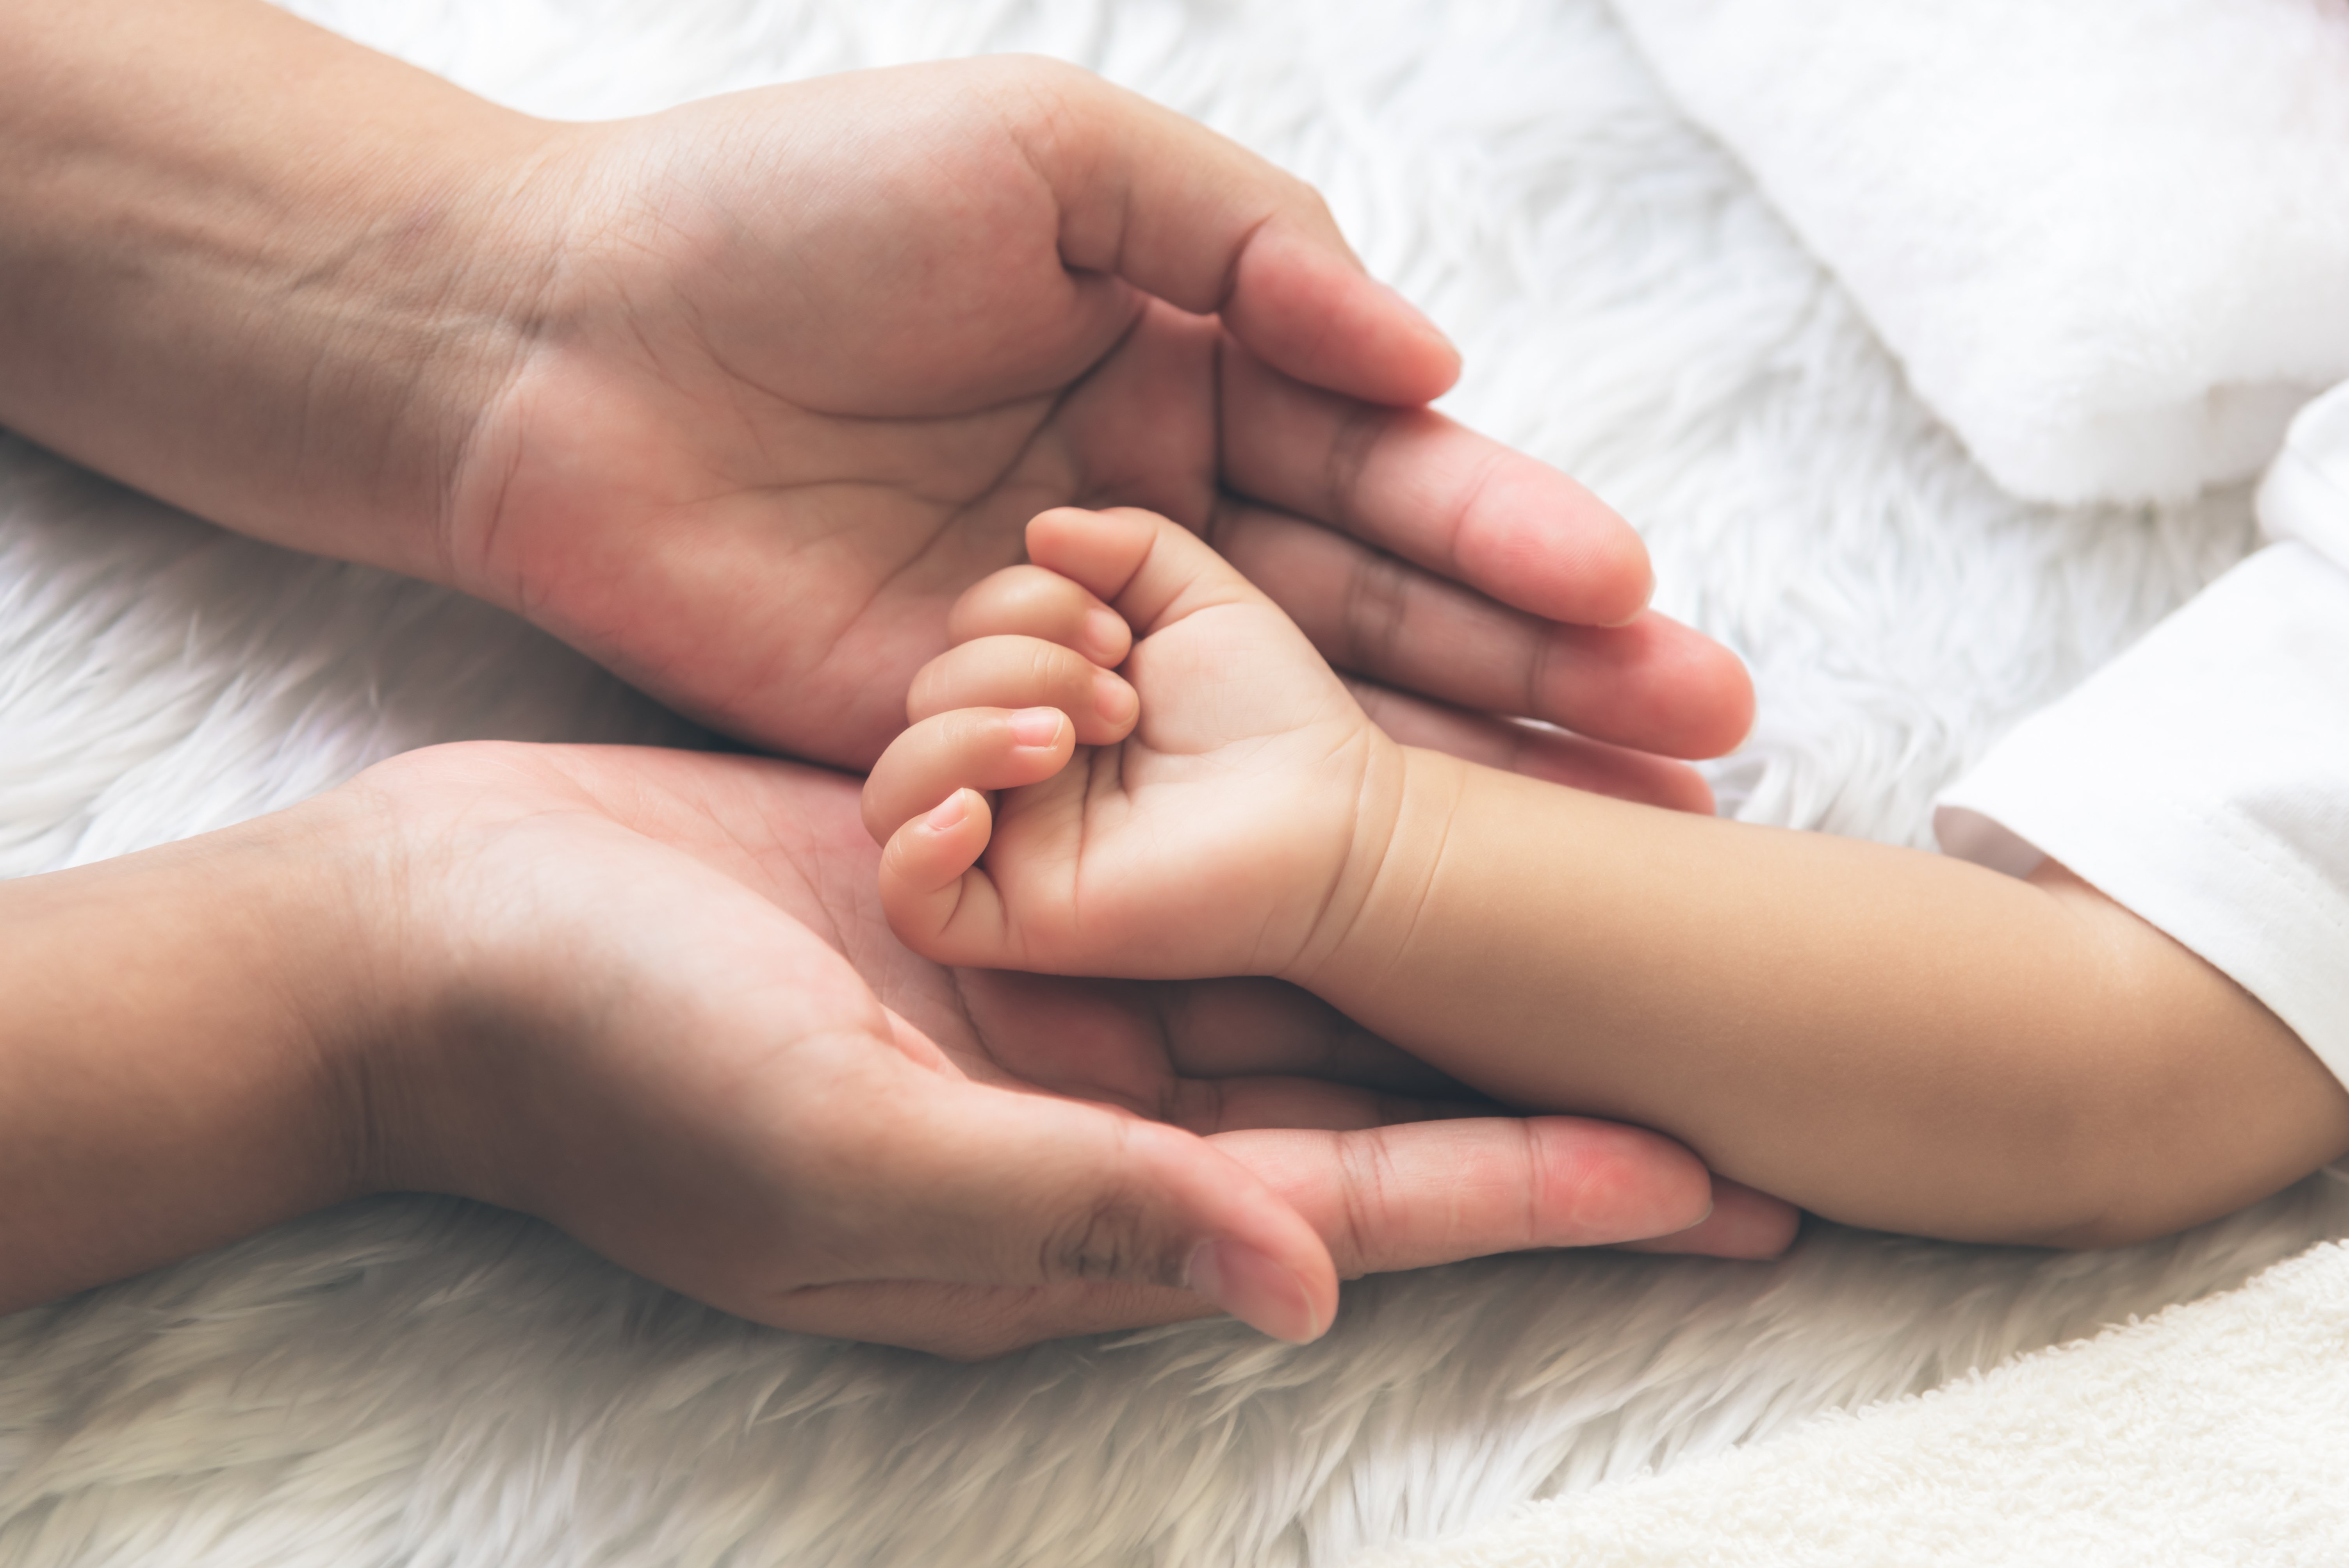 Die Hand des Babys wird auf die Hand der Mutter gelegt | Quelle: Shutterstock